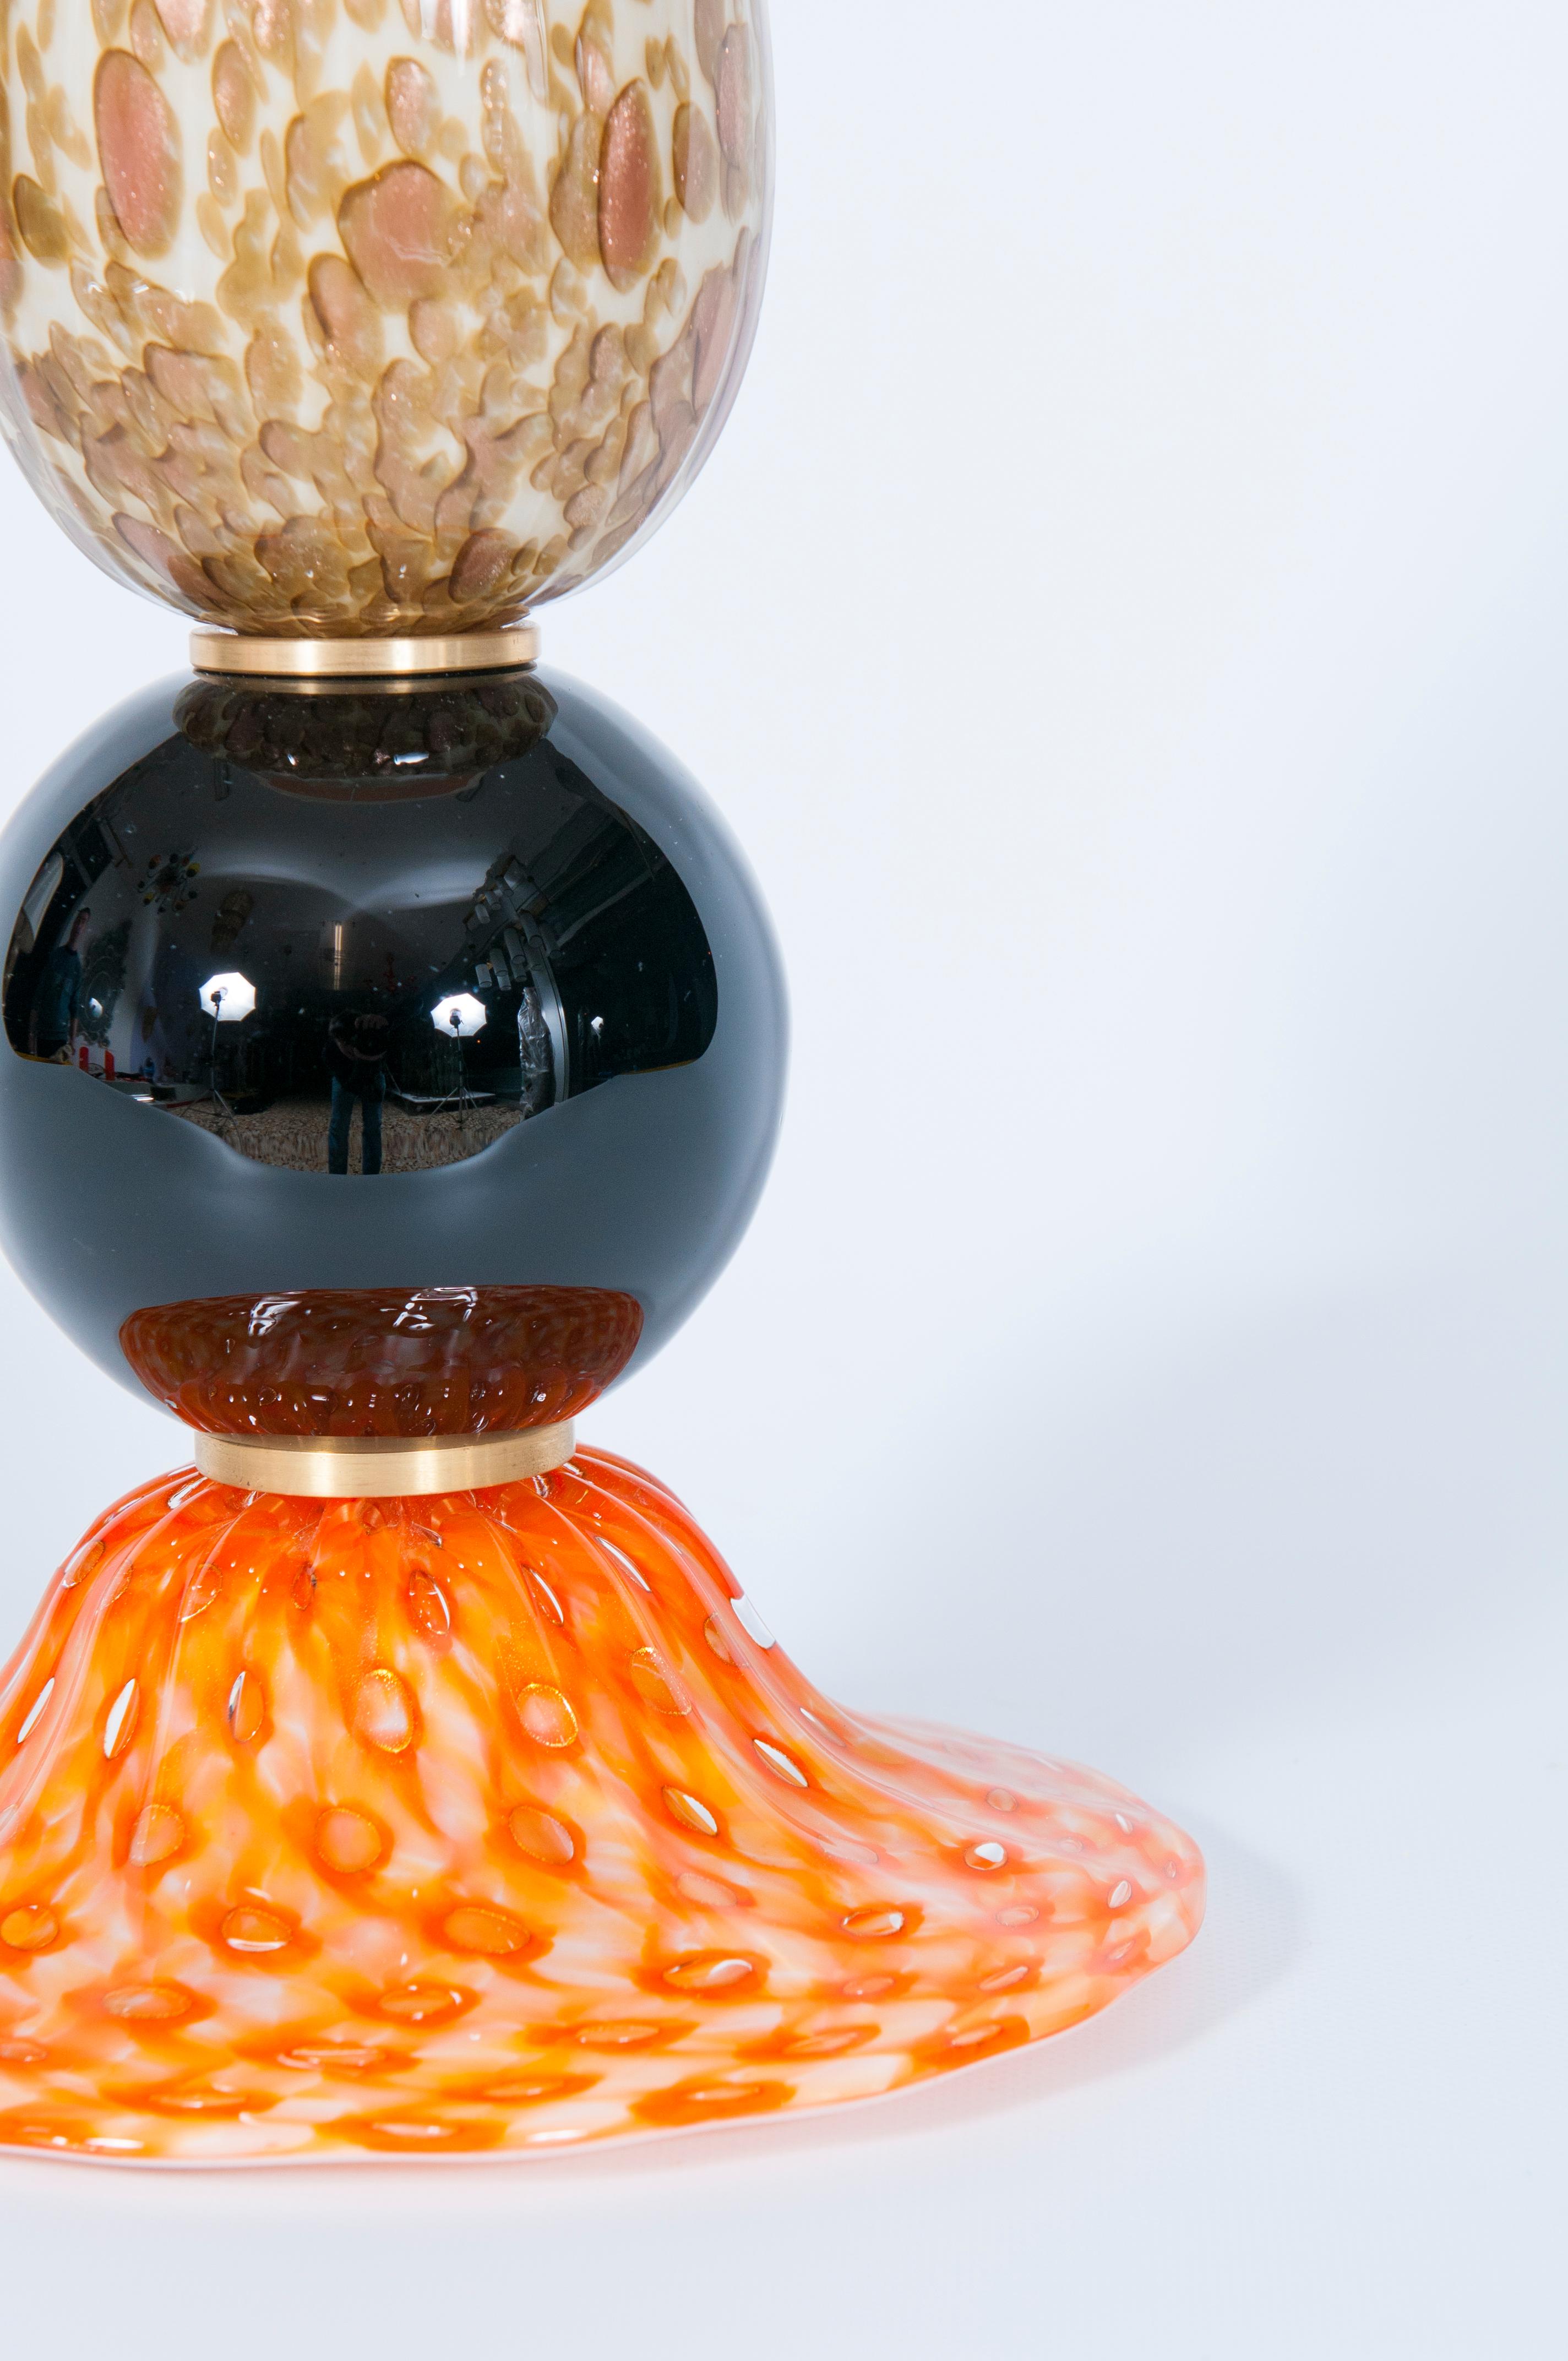 Art Glass Murano Table Lamp vibrant Orange basement Brown & White stem 1980s Italy For Sale